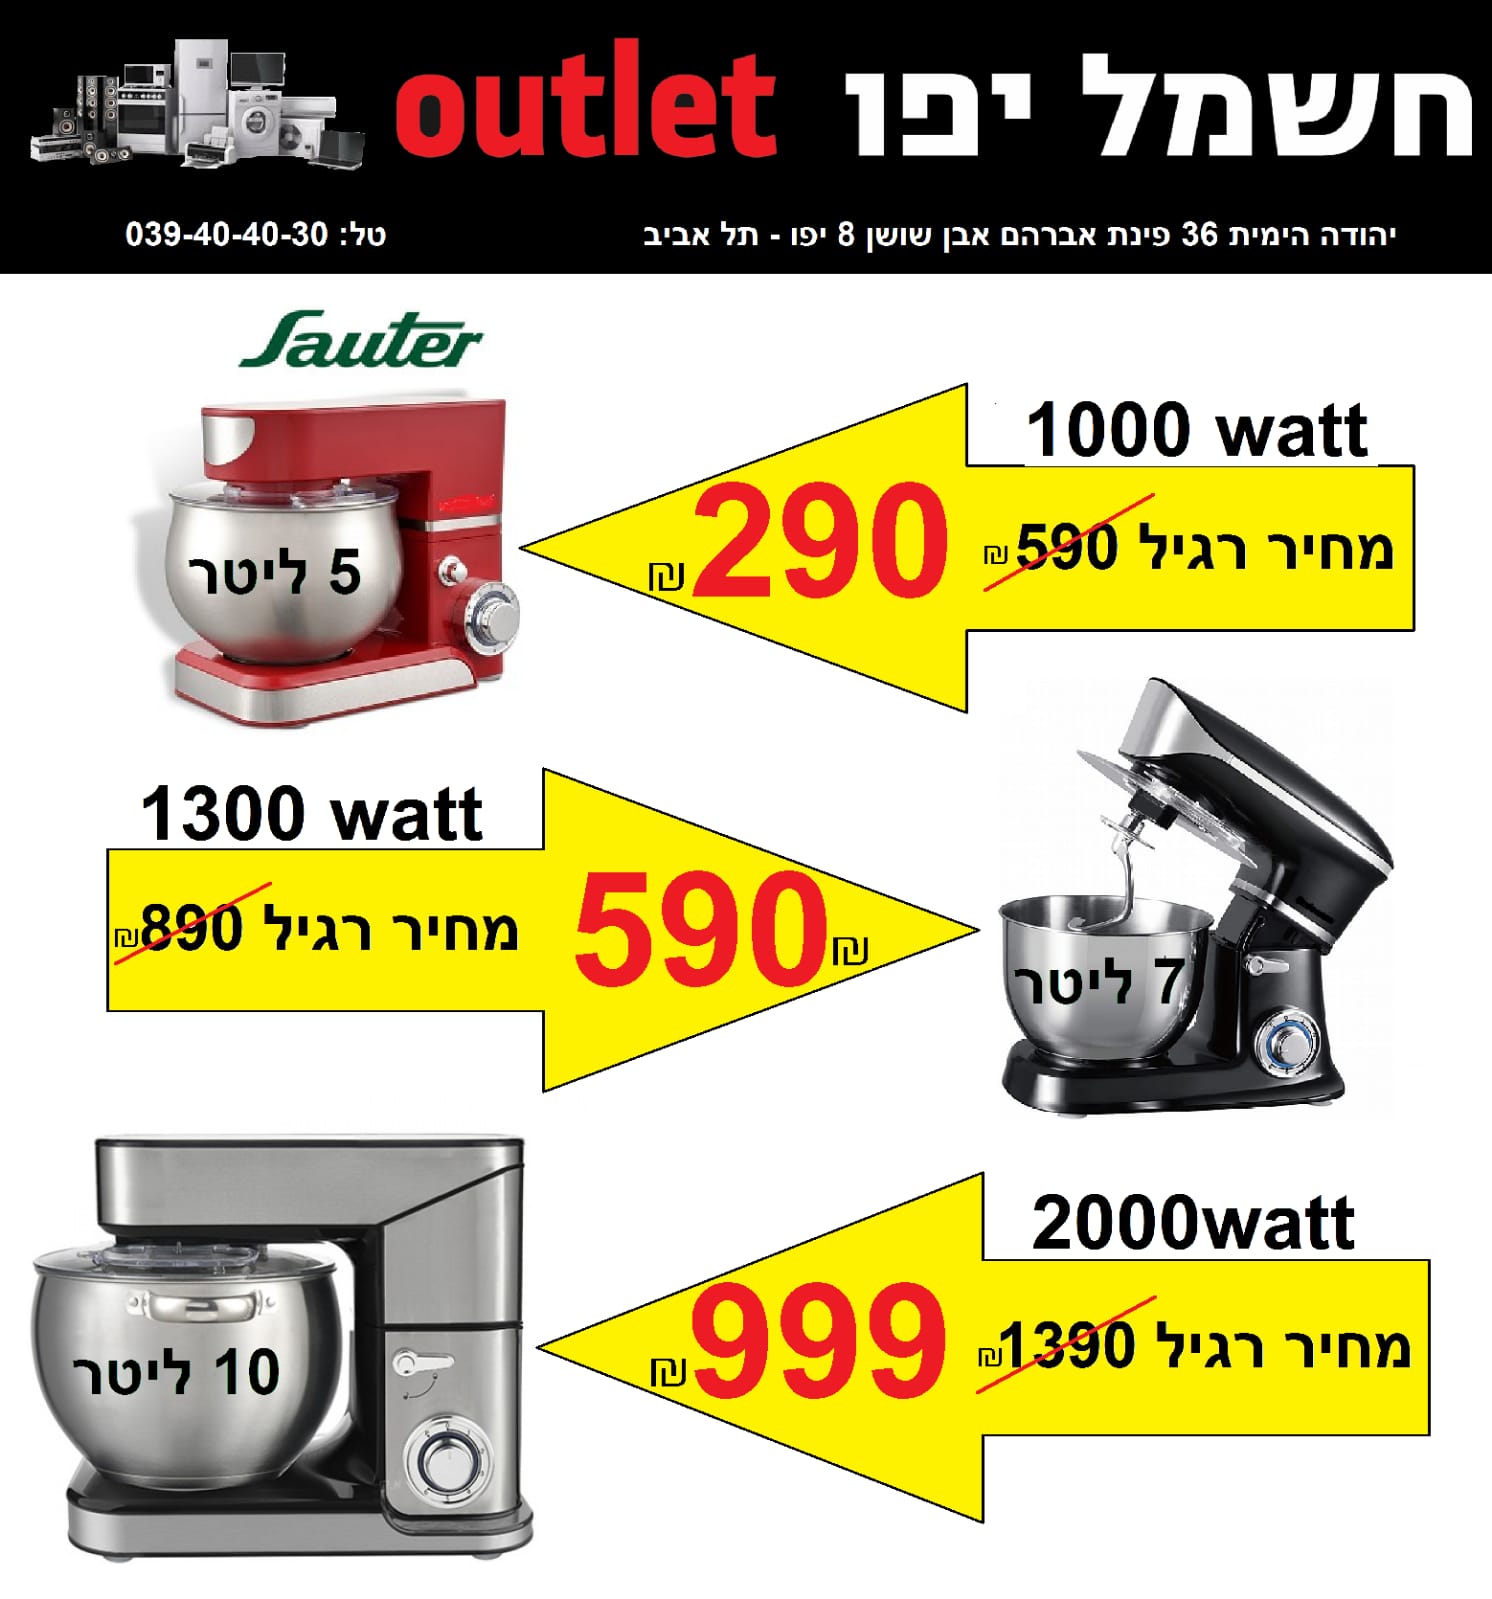  تخفيضات كبيرة على الأسعار في صابة كهرباء يافا OUTLET 